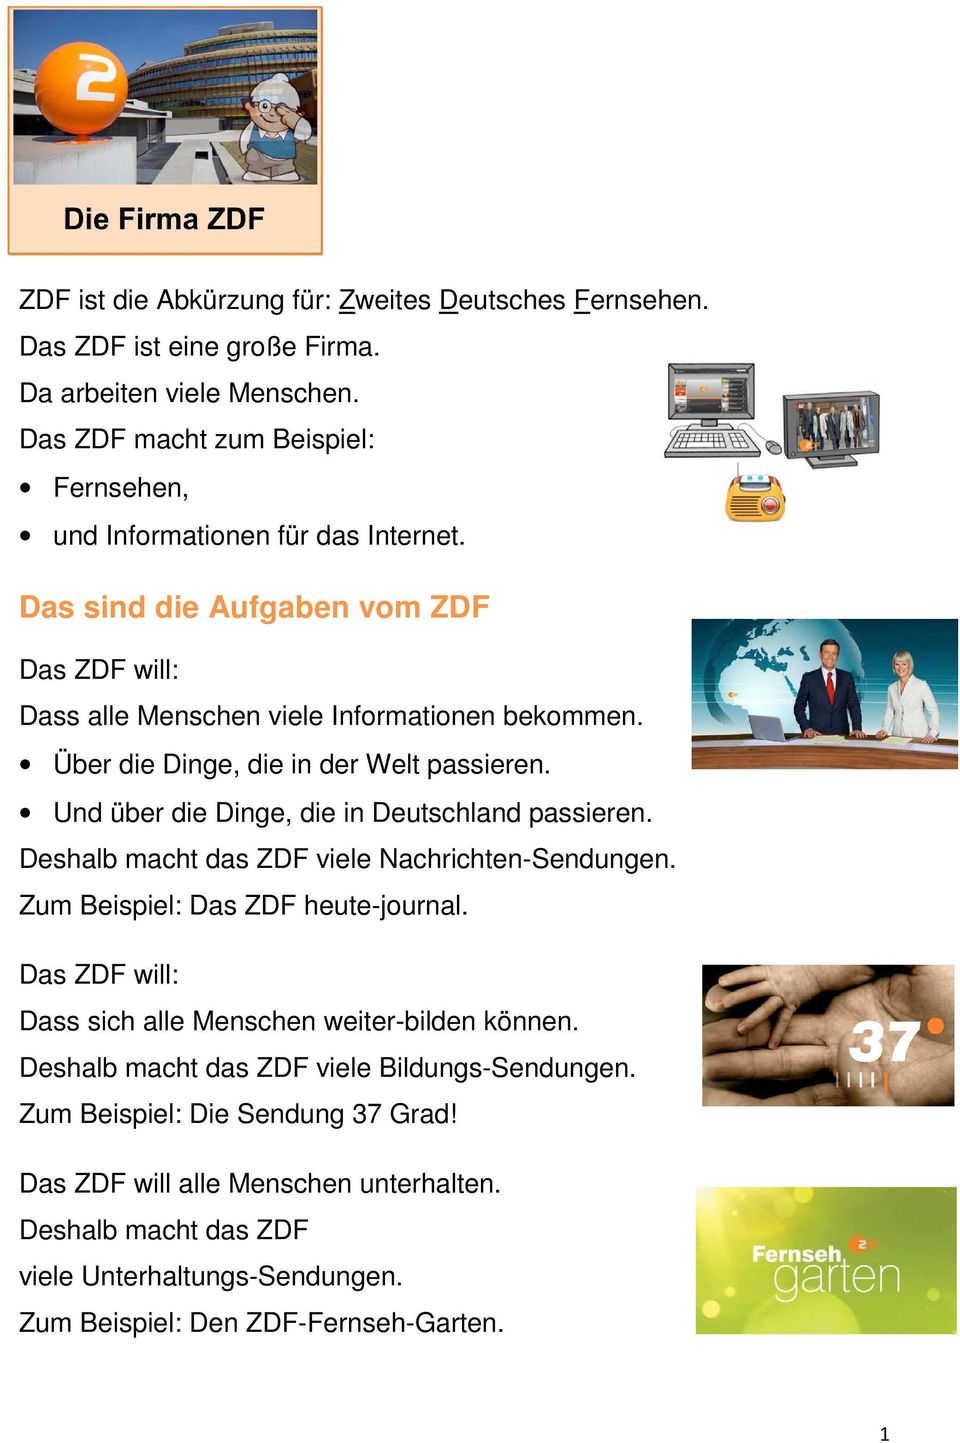 Über die Dinge, die in der Welt passieren. Und über die Dinge, die in Deutschland passieren. Deshalb macht das ZDF viele Nachrichten-Sendungen. Das ZDF heute-journal.